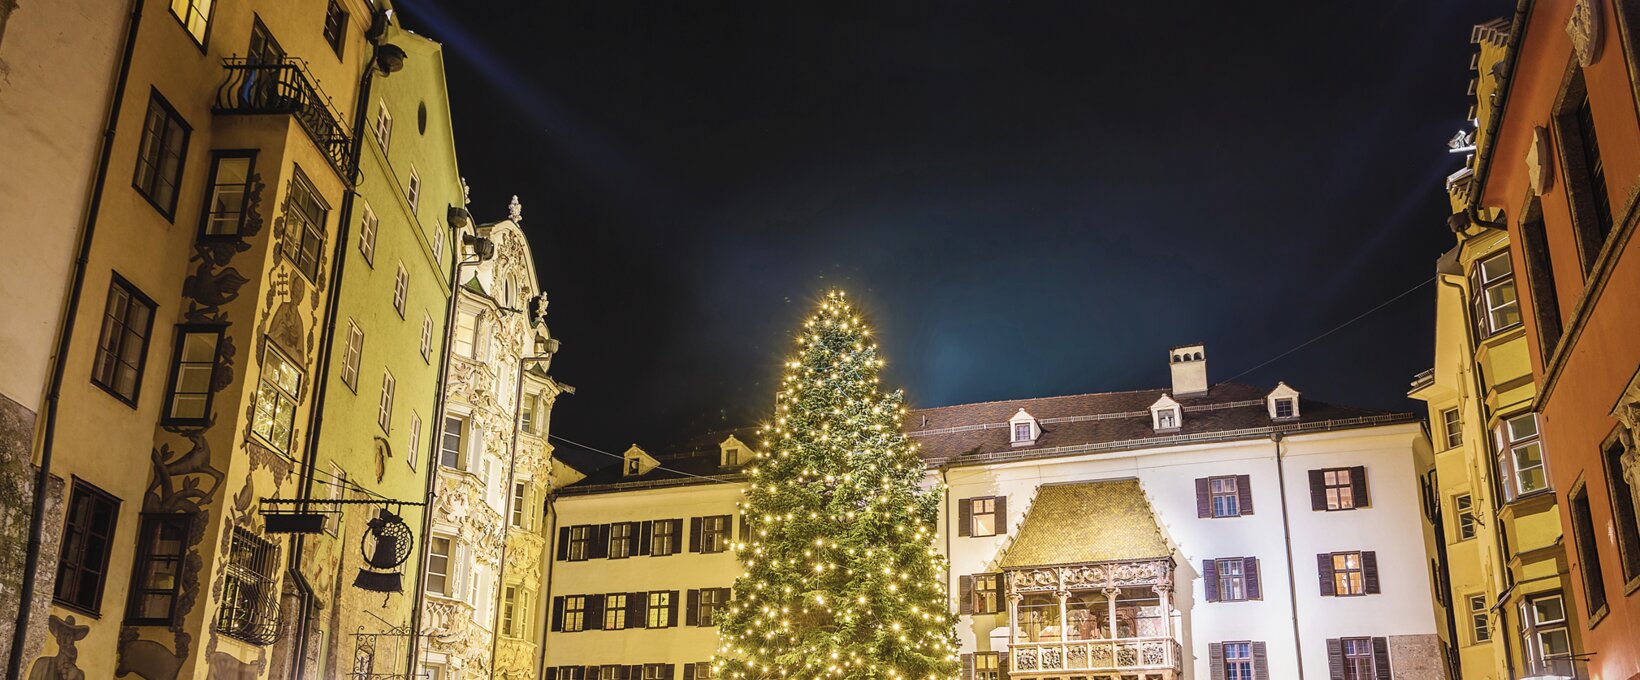 Goldenes Dachl  mit Weihnachtbaum | Innsbruck